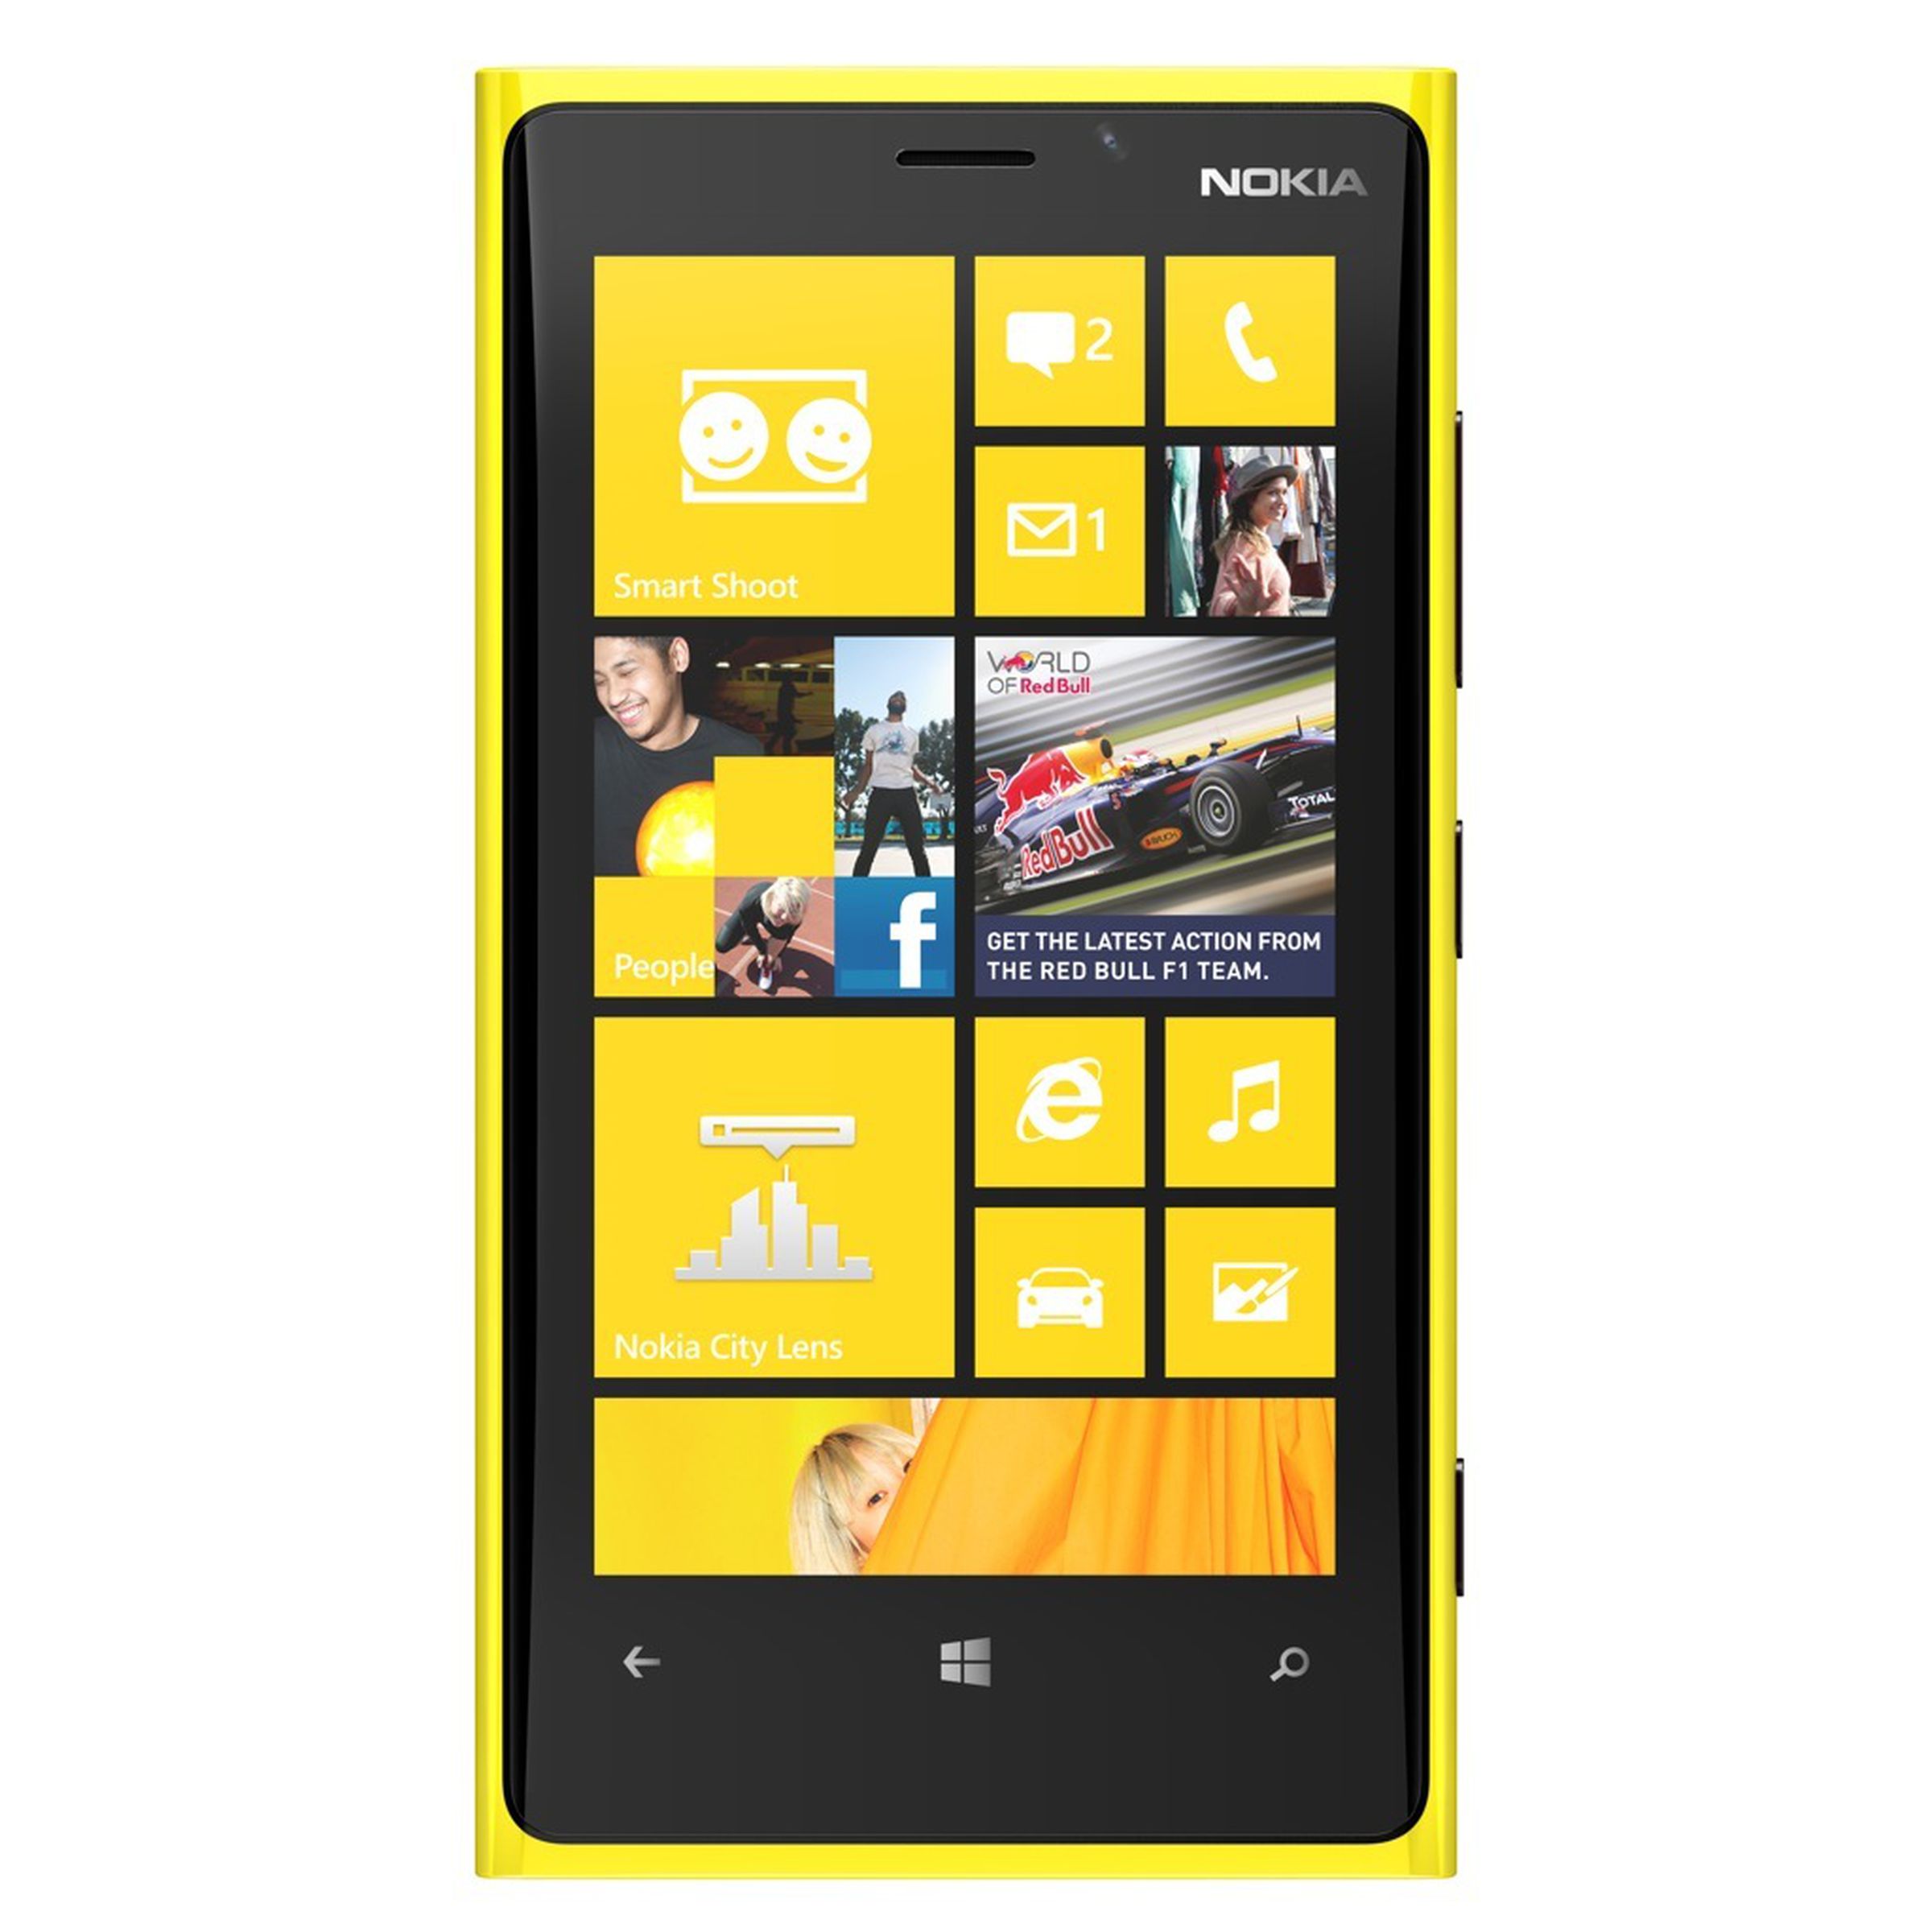 Nokia Lumia 920 press pictures